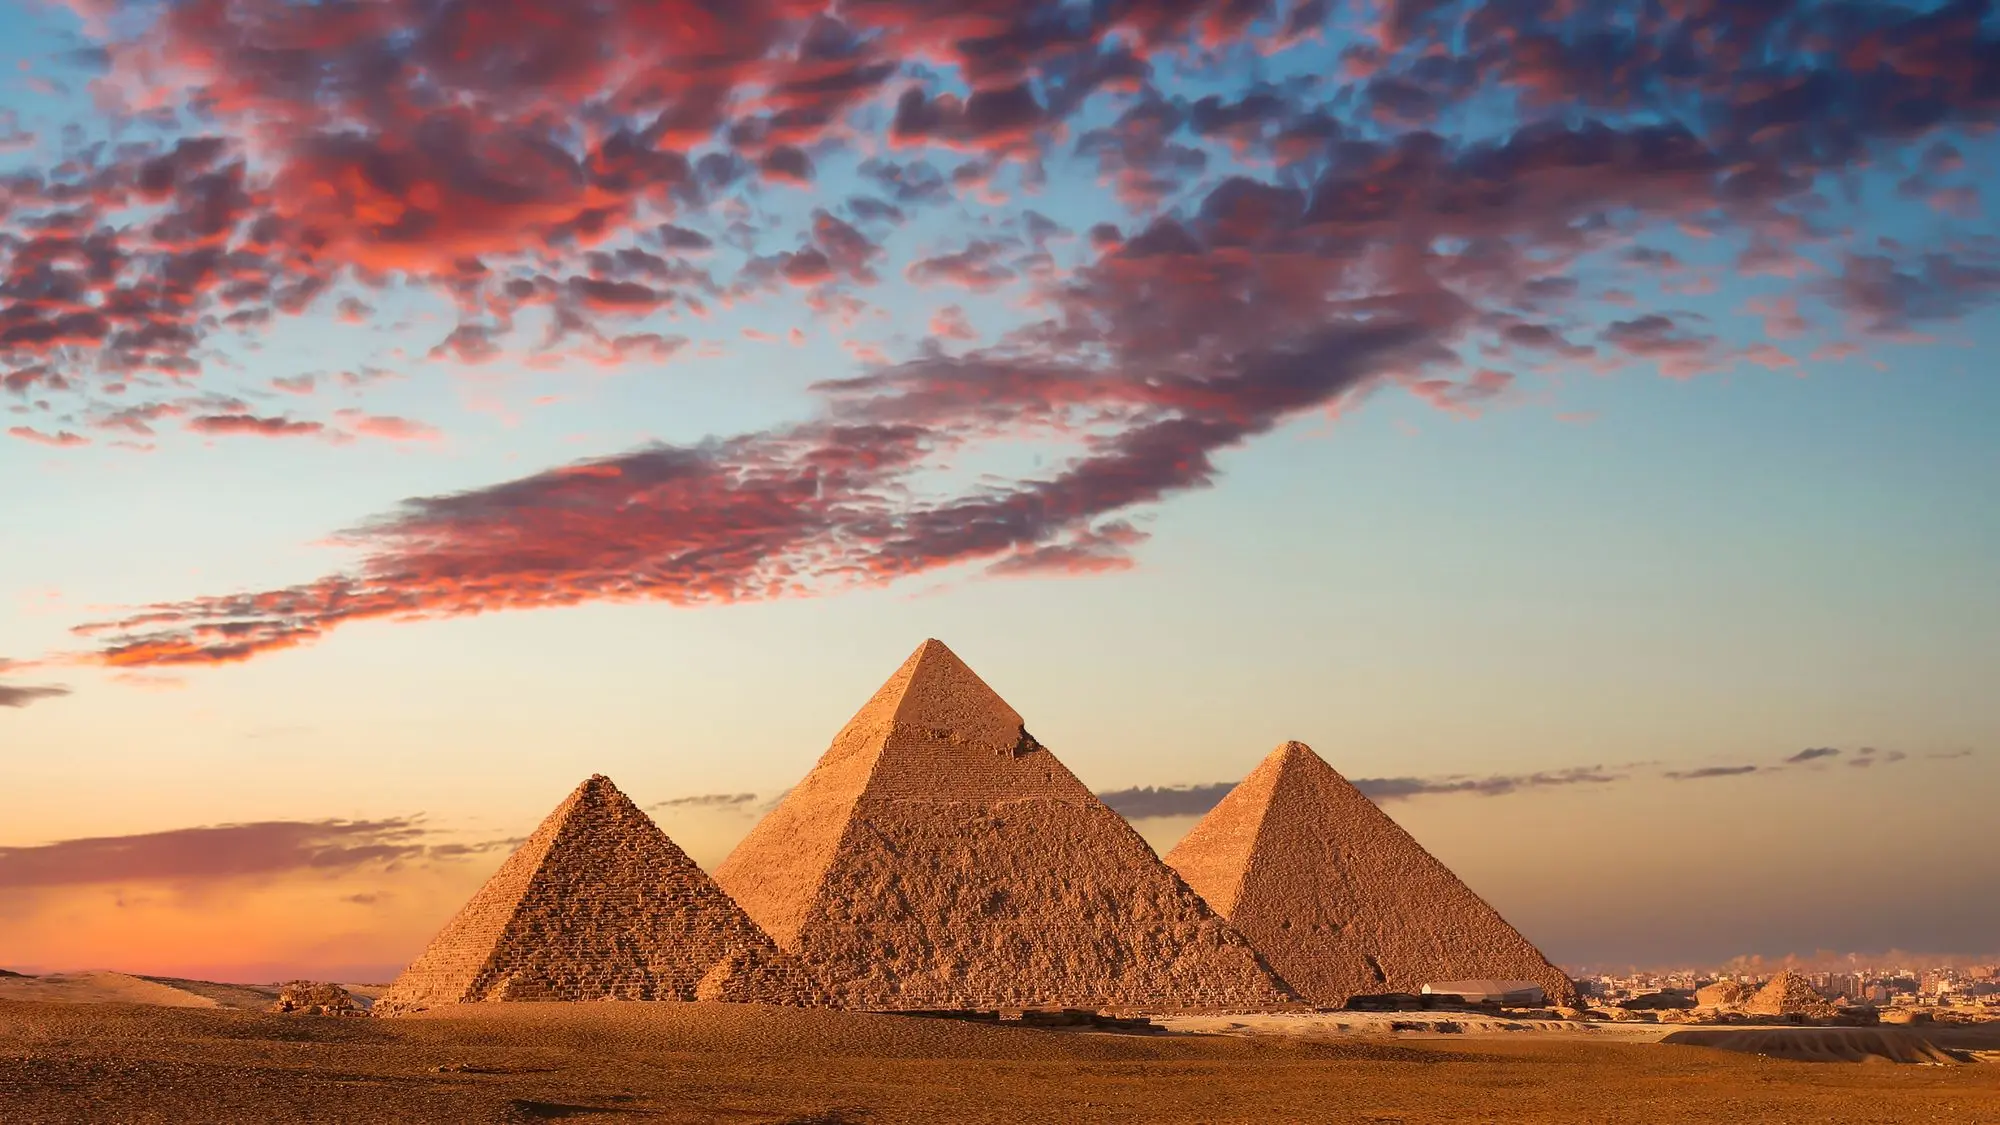 Pirâmides do Egito, o que são e como foram erguidas